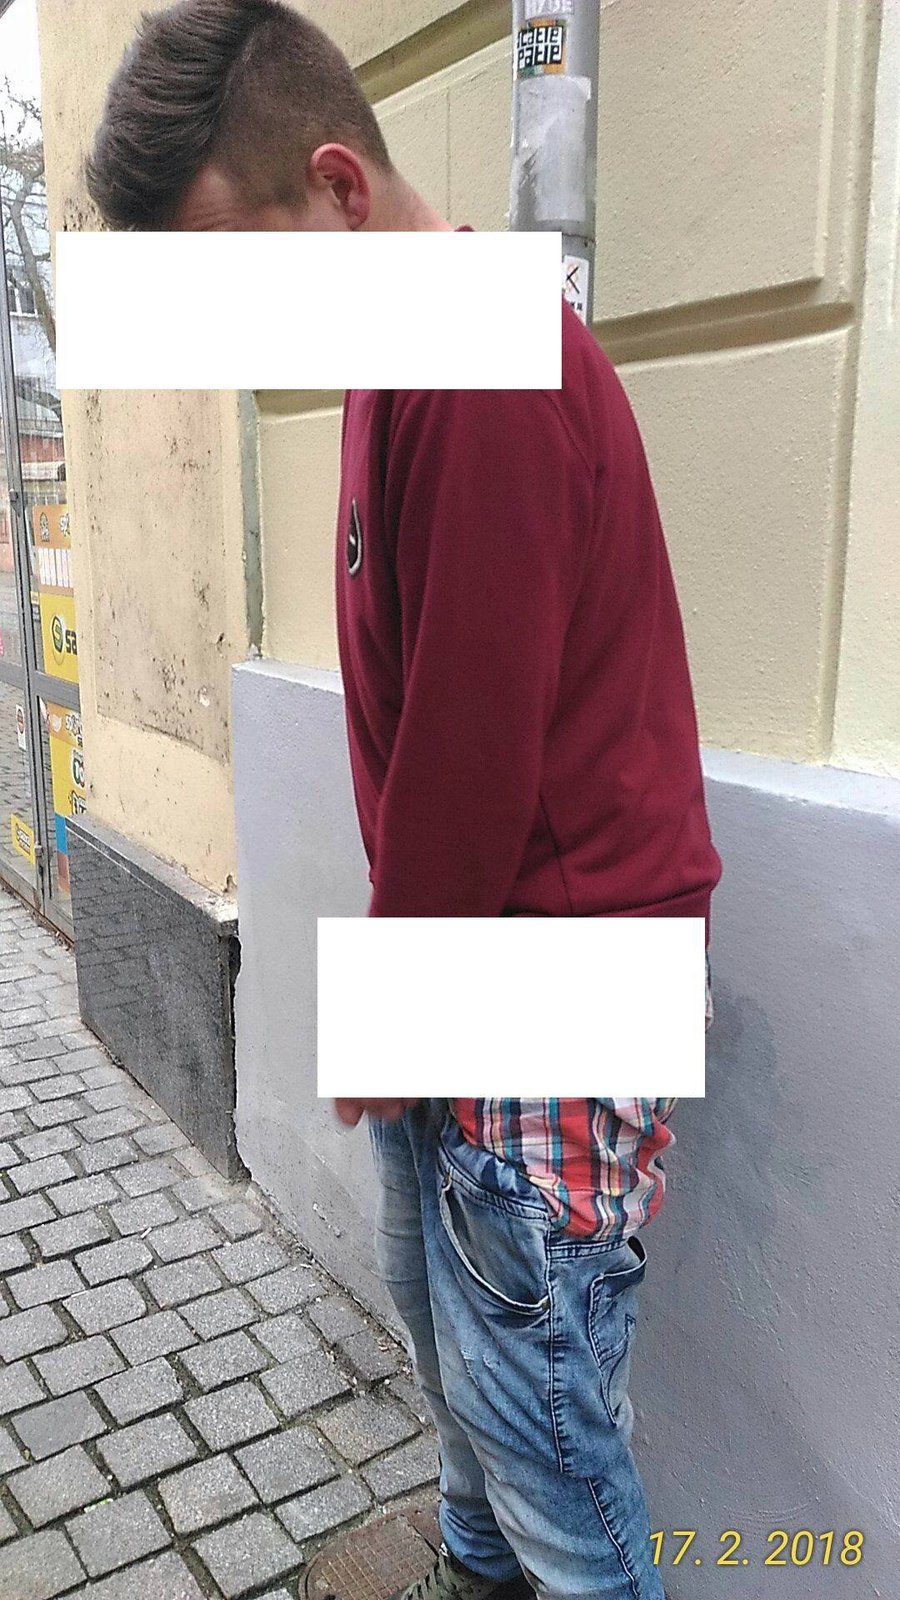 Zfetovaný mladík v centru Plzně má z ostudy kabát. Vůbec o sobě nevěděl a na veřejnosti se ukájel.